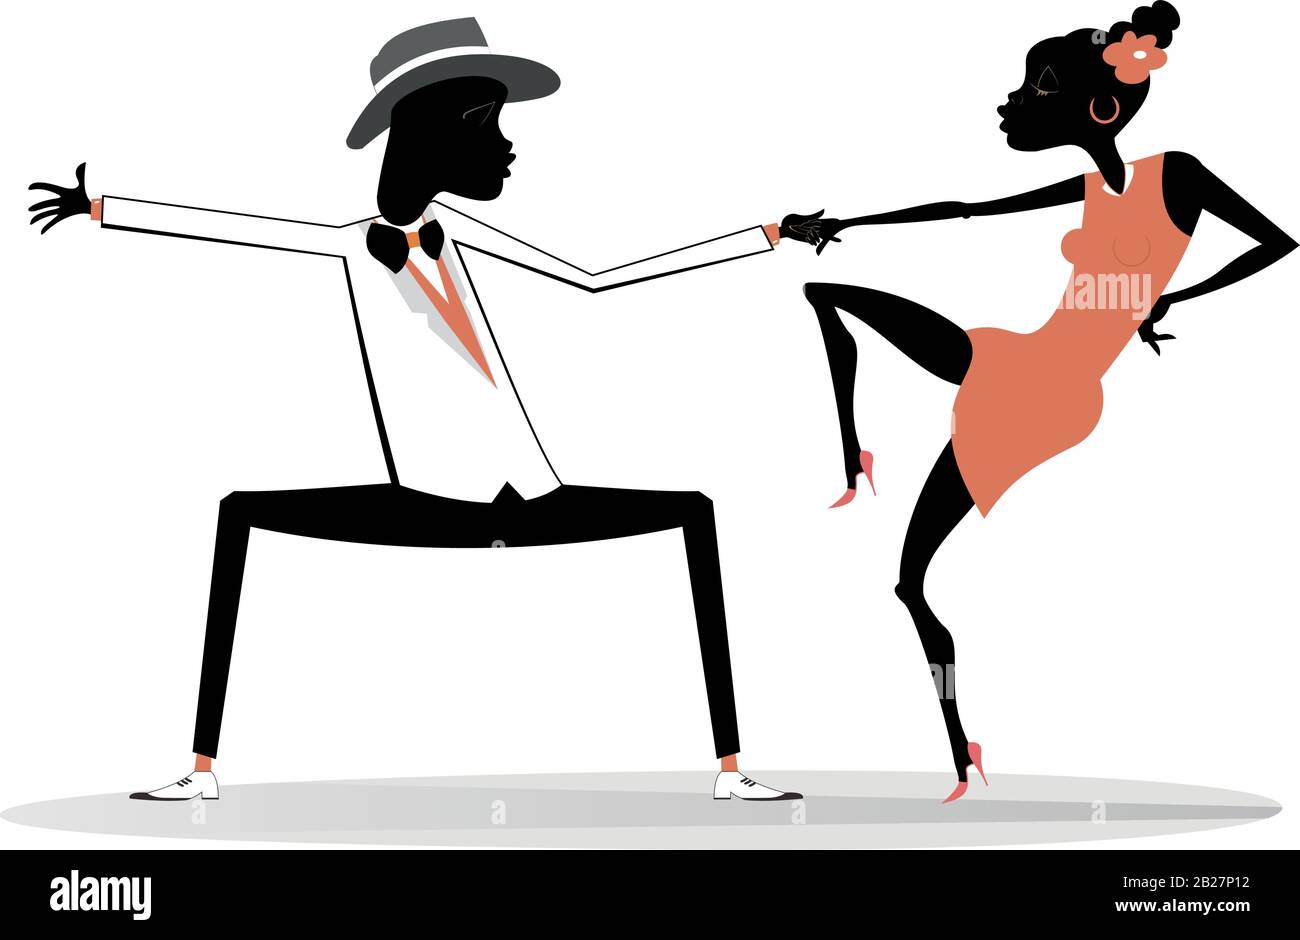 Danse romantique jeune couple africain isolé illustration. Drôle dansant jeune homme et femme africains isolés sur l'illustration blanche Illustration de Vecteur